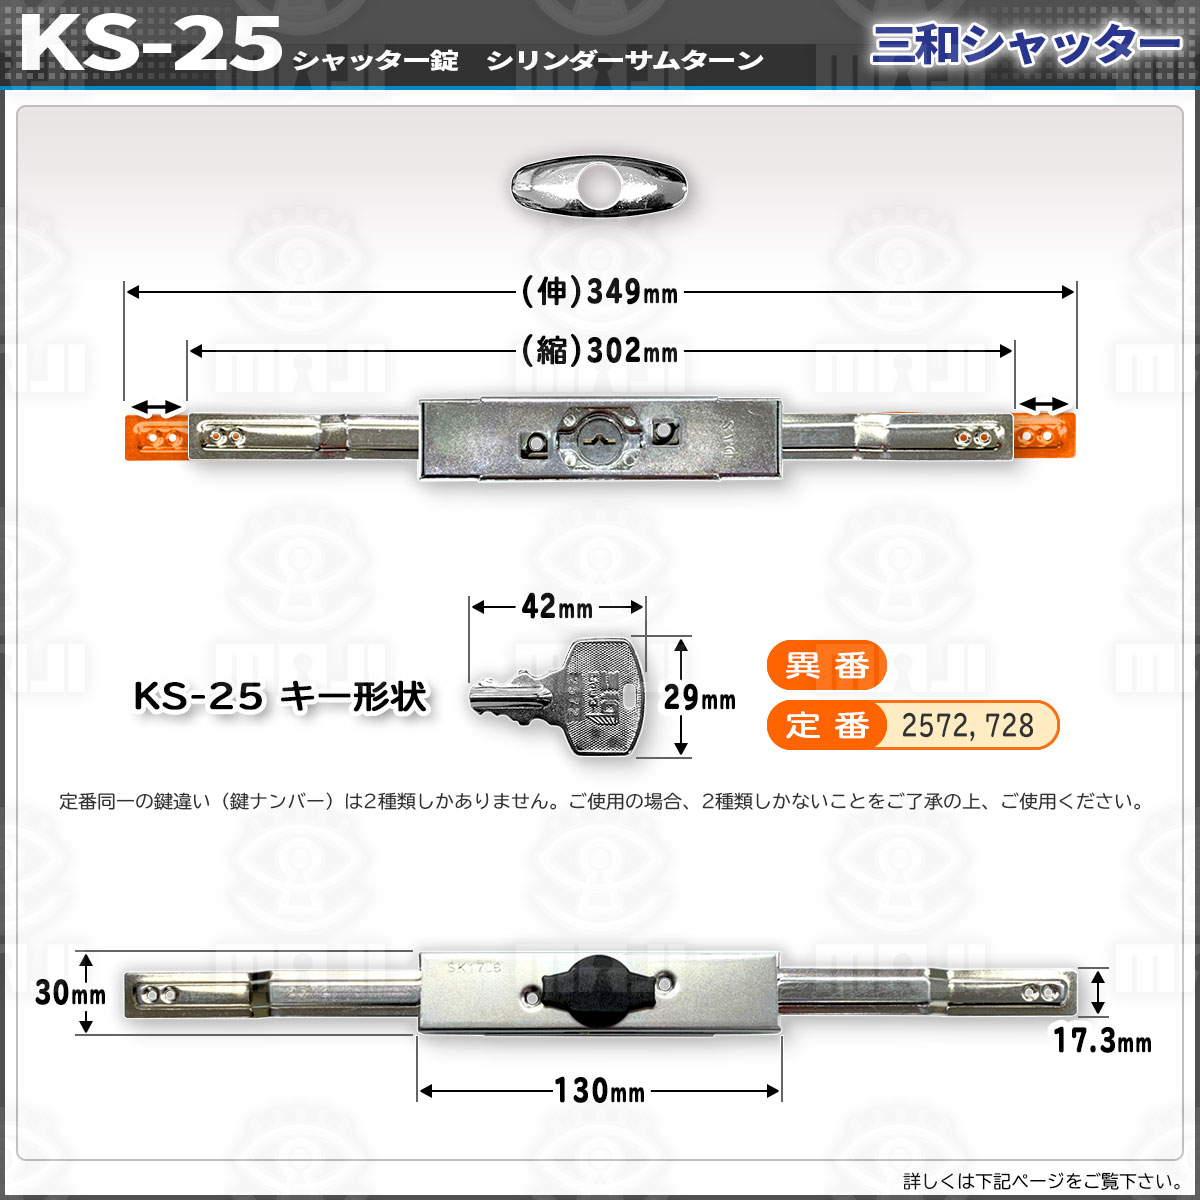 正規代理店 2本セット KS-25D シャッター錠 同一キー sanwa 三和シャッター錠 新型シリンダー サムターン アームサイズは伸345mm,縮300mm  三和KS-25の2個同一